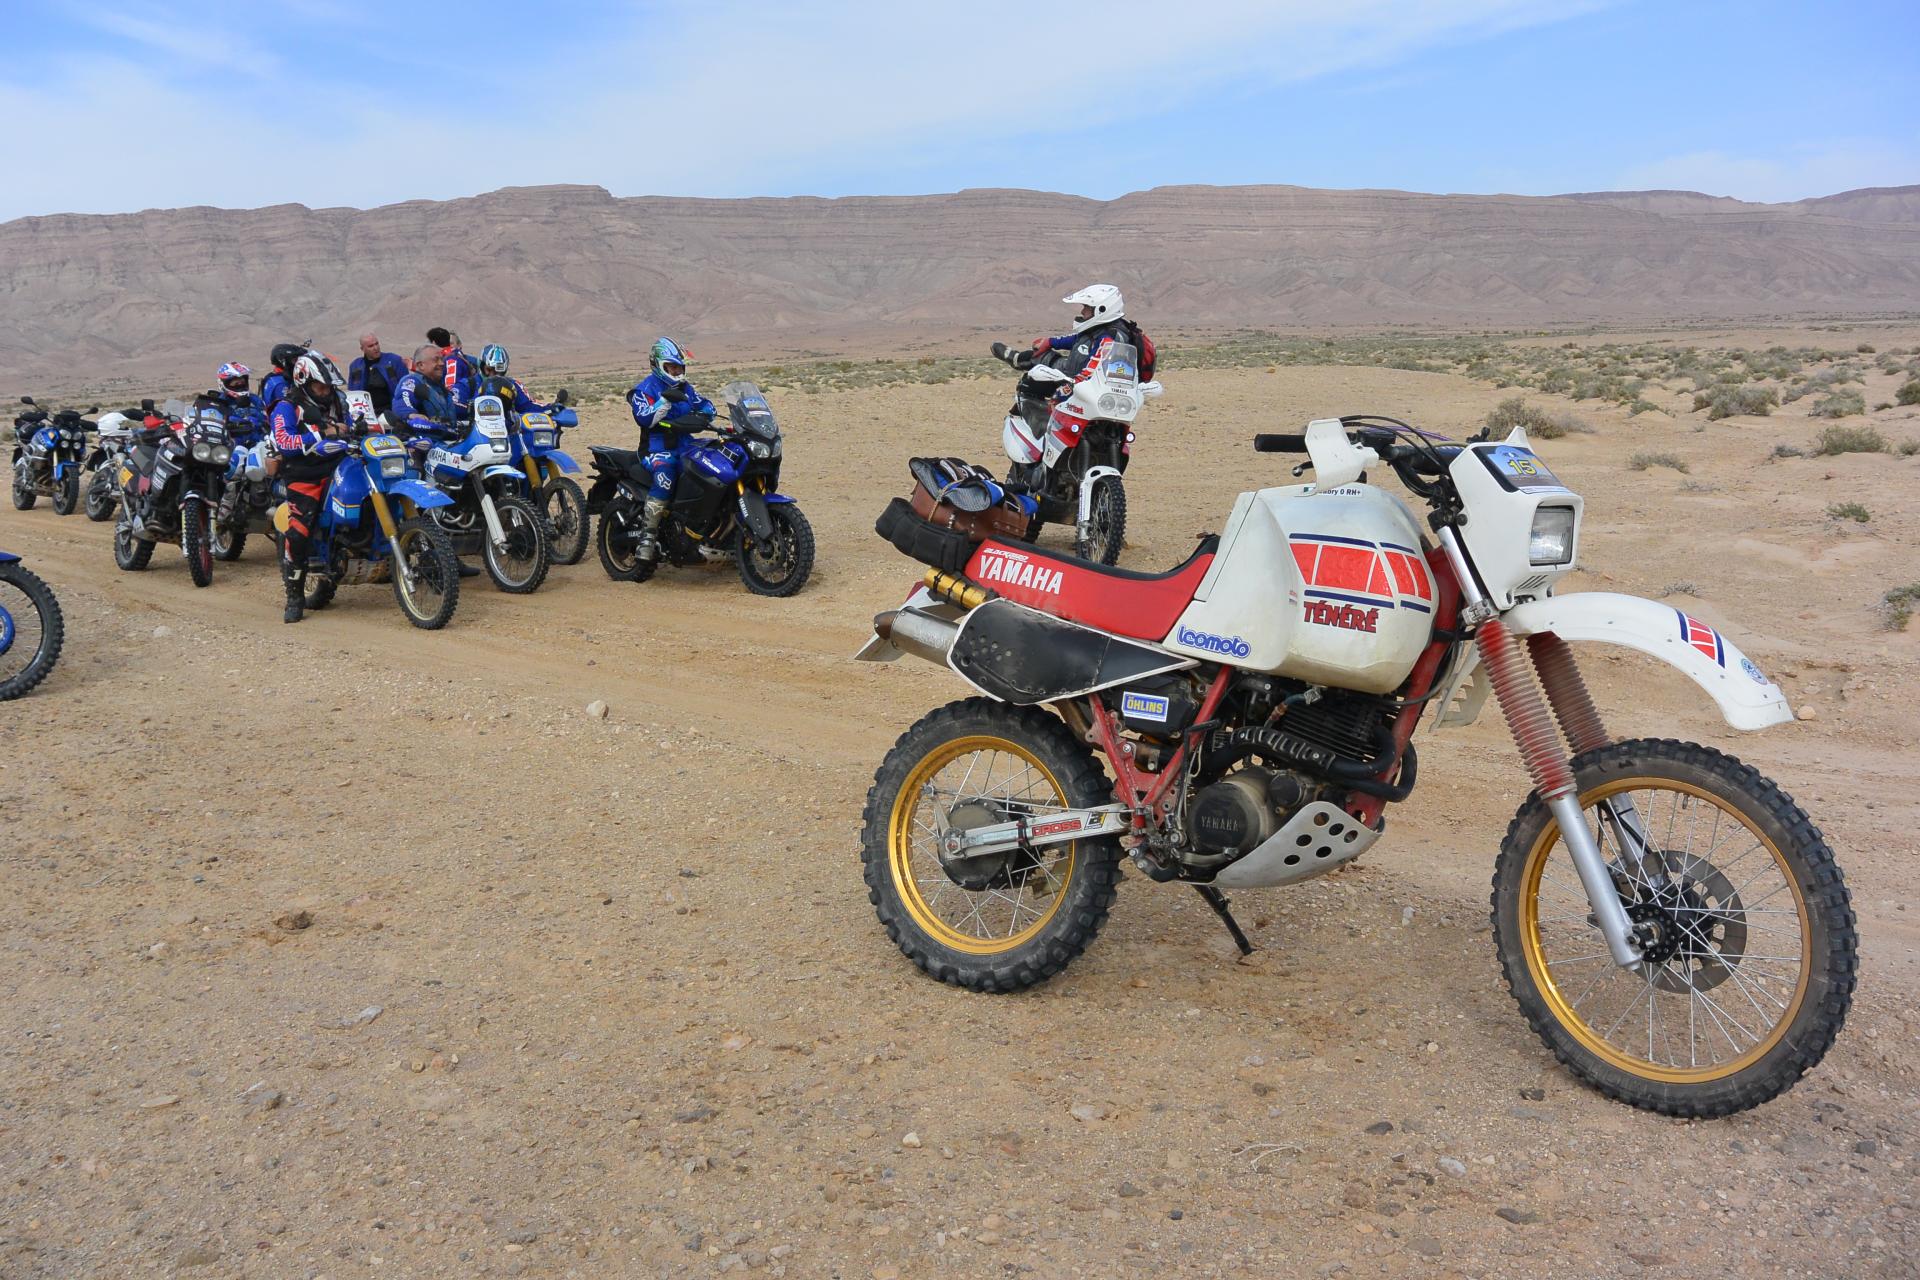 SuperTènèrè deserto Tunisia gruppo moto 